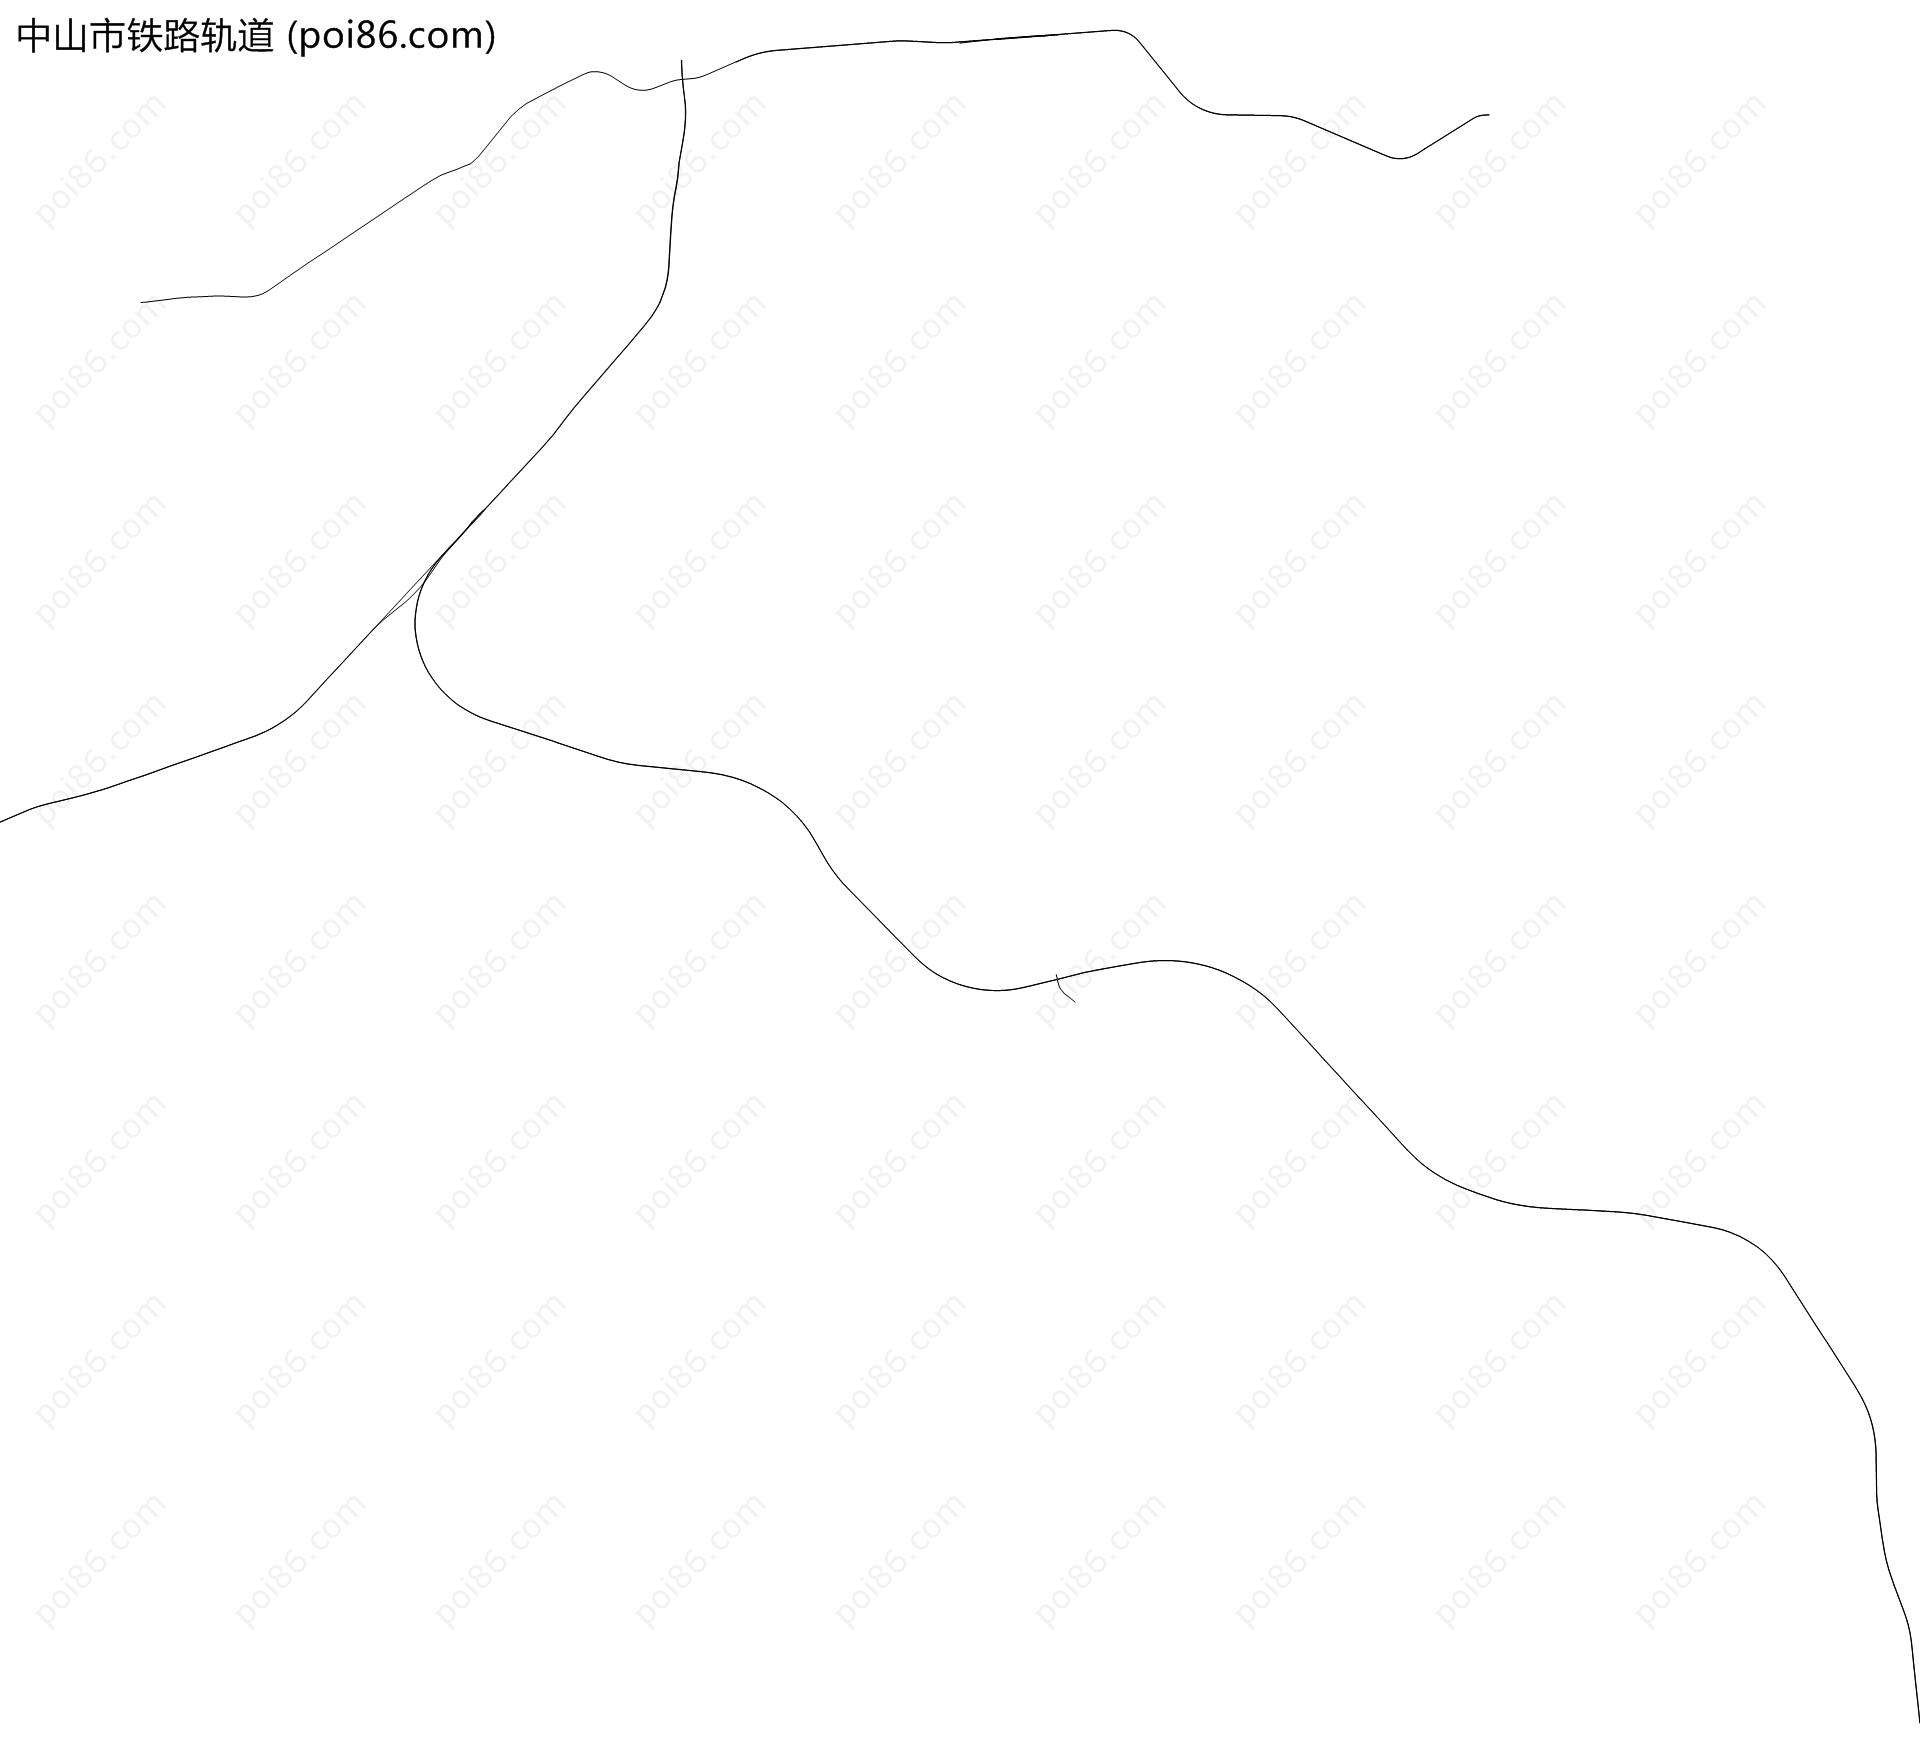 中山市铁路轨道地图